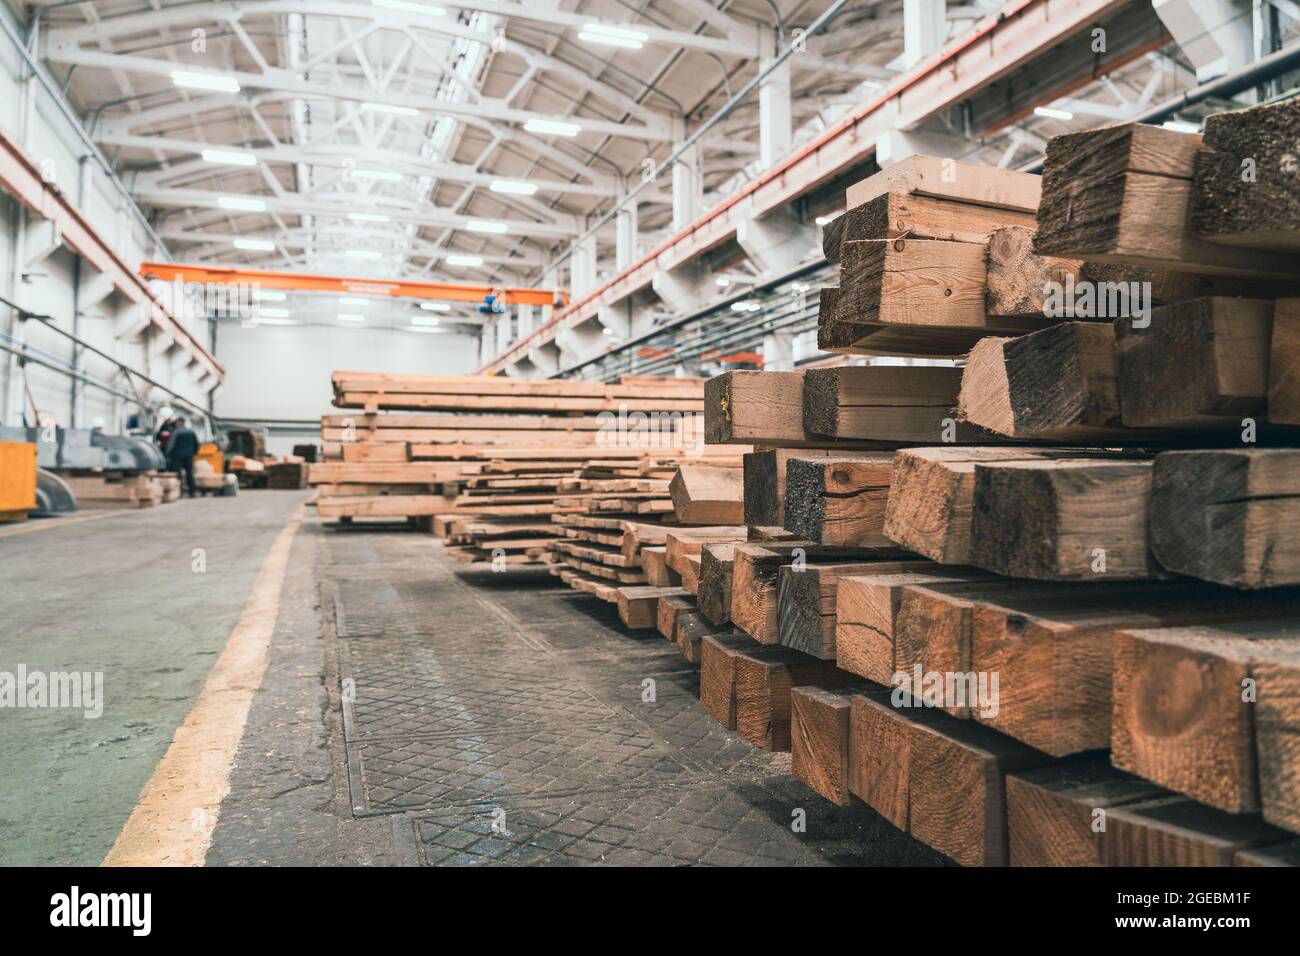 Usine de travail du bois avec des piles de bois et des machines d'équipement. Fabrication professionnelle de menuiserie industrielle. Banque D'Images